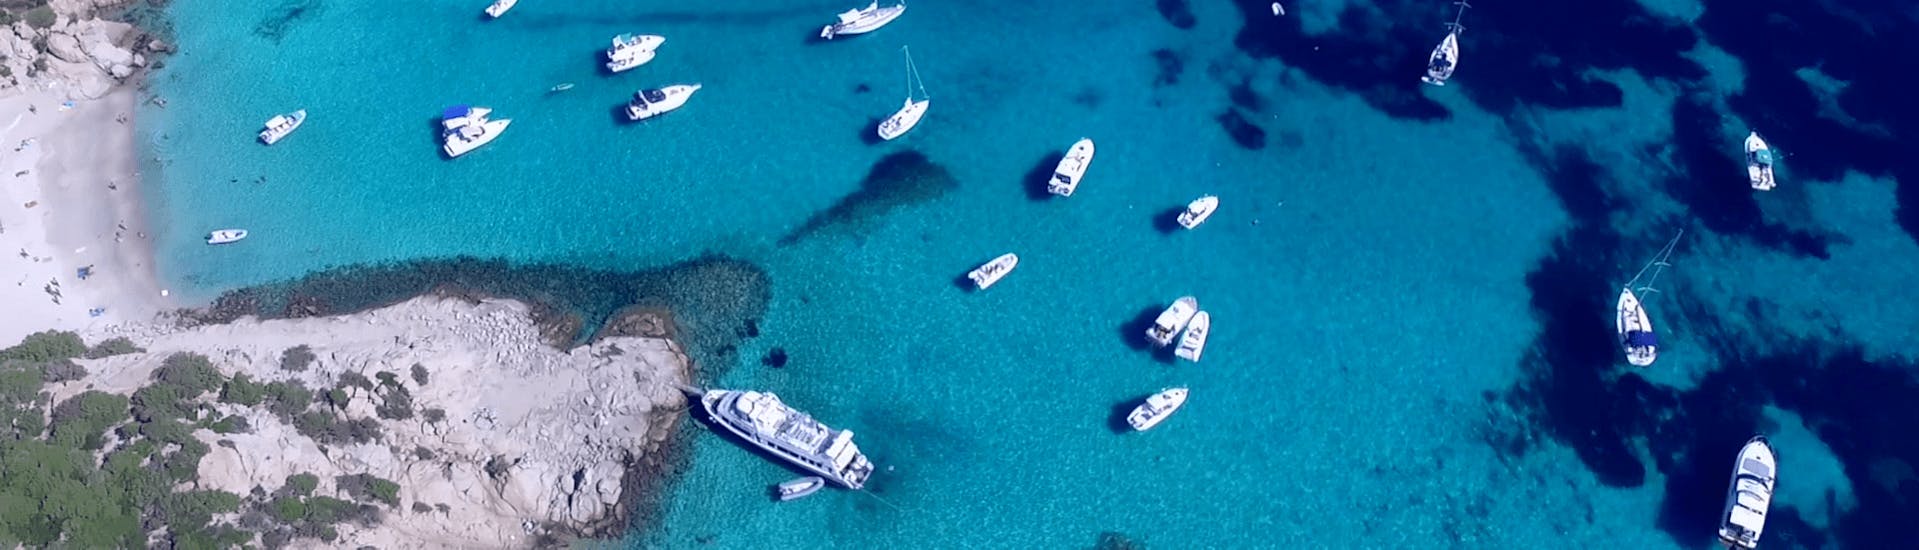 Alcune barche si avvicinano a una delle magnifiche spiagge della Sardegna durante il viaggio in barca da Palau all'arcipelago di La Maddalena.